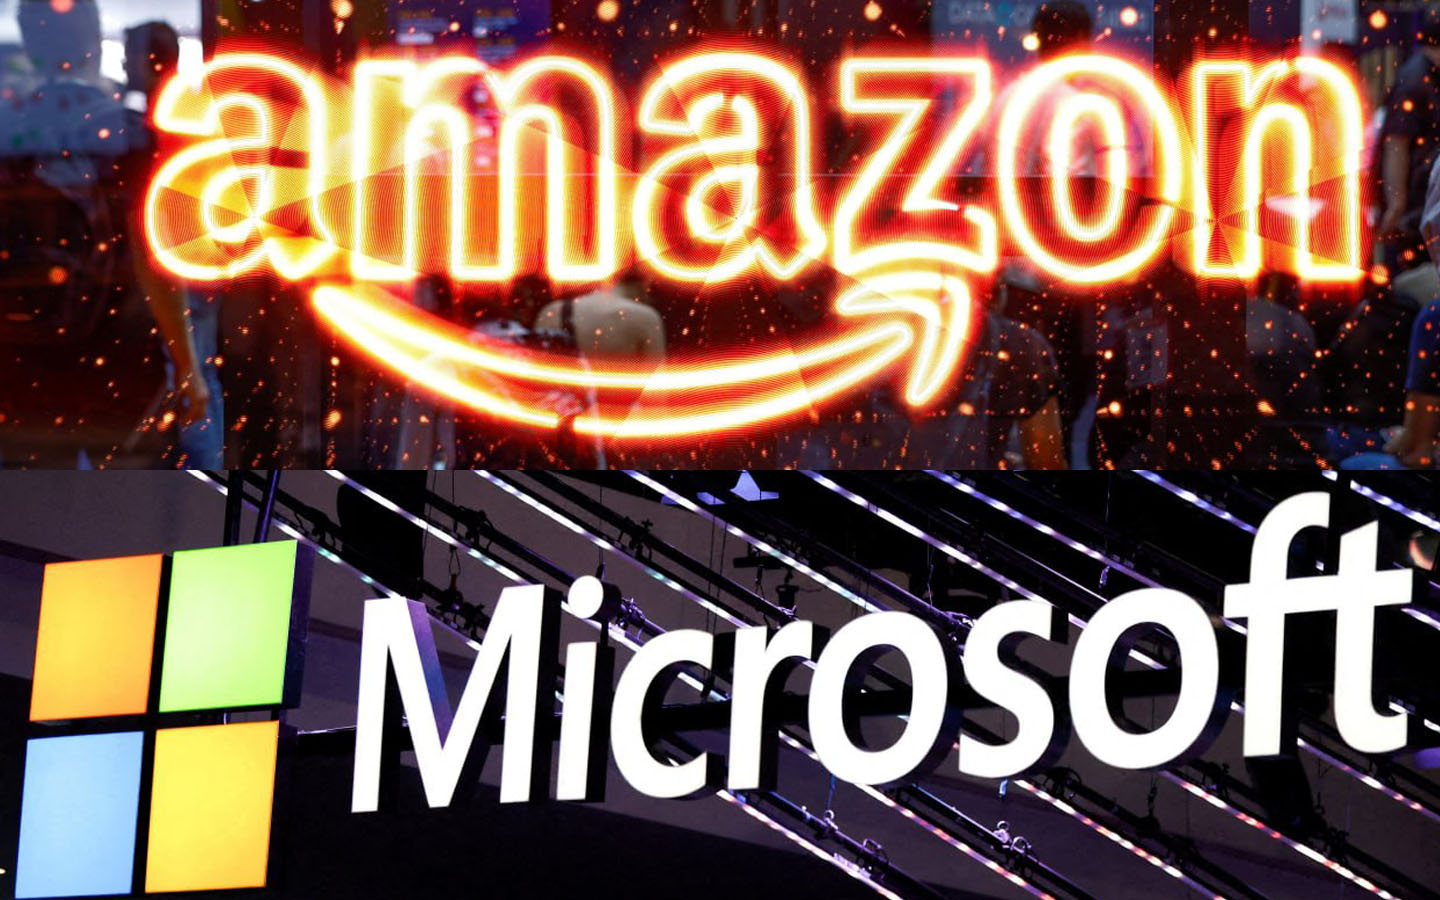 Microsoft និង Amazon គ្រោងចាយរាប់ពាន់លានដុល្លារក្នុងវិស័យបច្ចេកវិទ្យាបារាំង